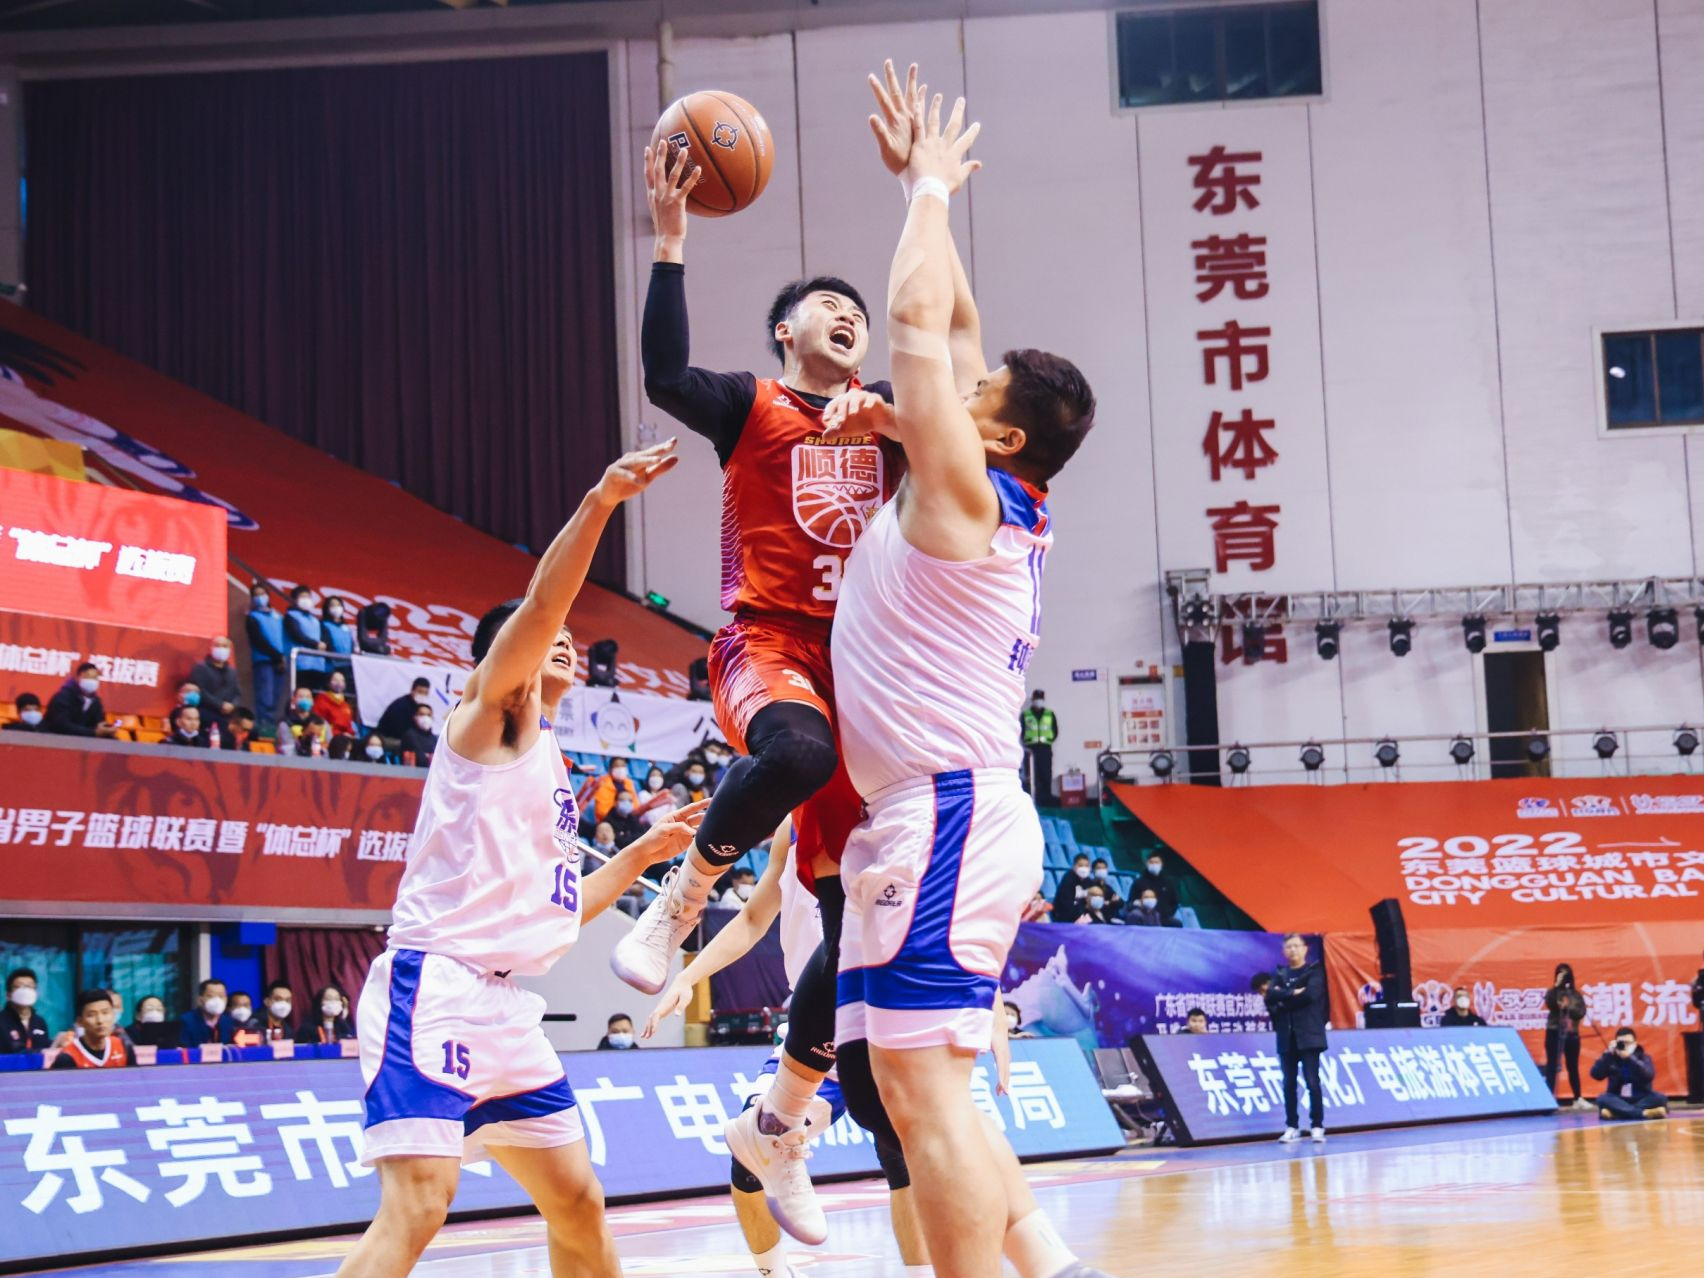 姚明点赞、易建联推荐代言，东莞举办篮球城市主题日活动